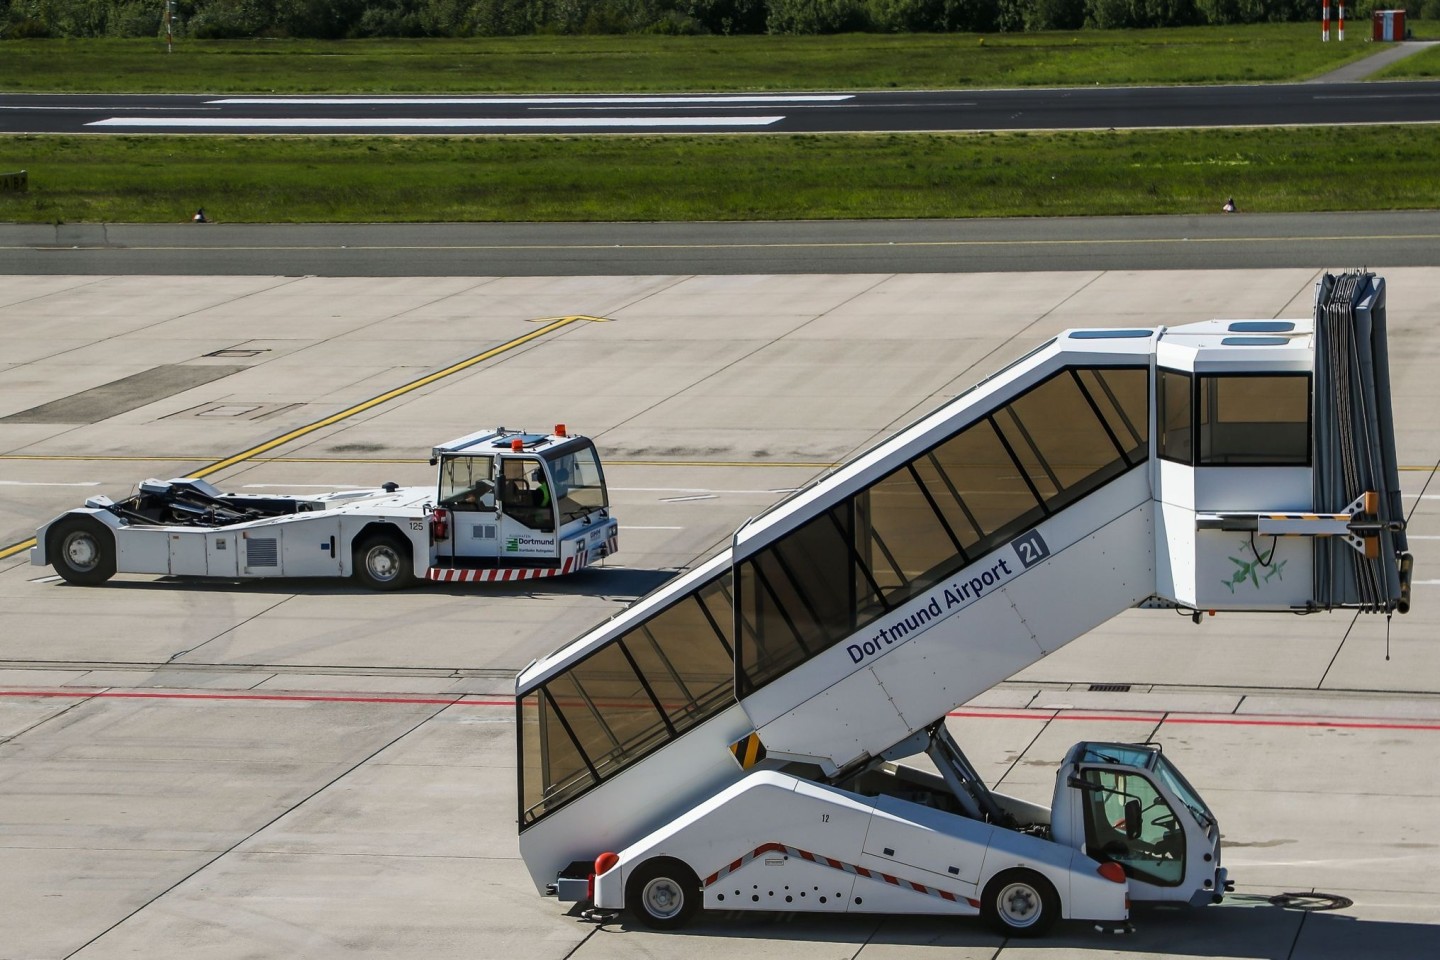 Am Flughafen Dortmund ist ein international gesuchter Mann gefasst worden, der einen anderen erstochen haben soll (Symbolbild).